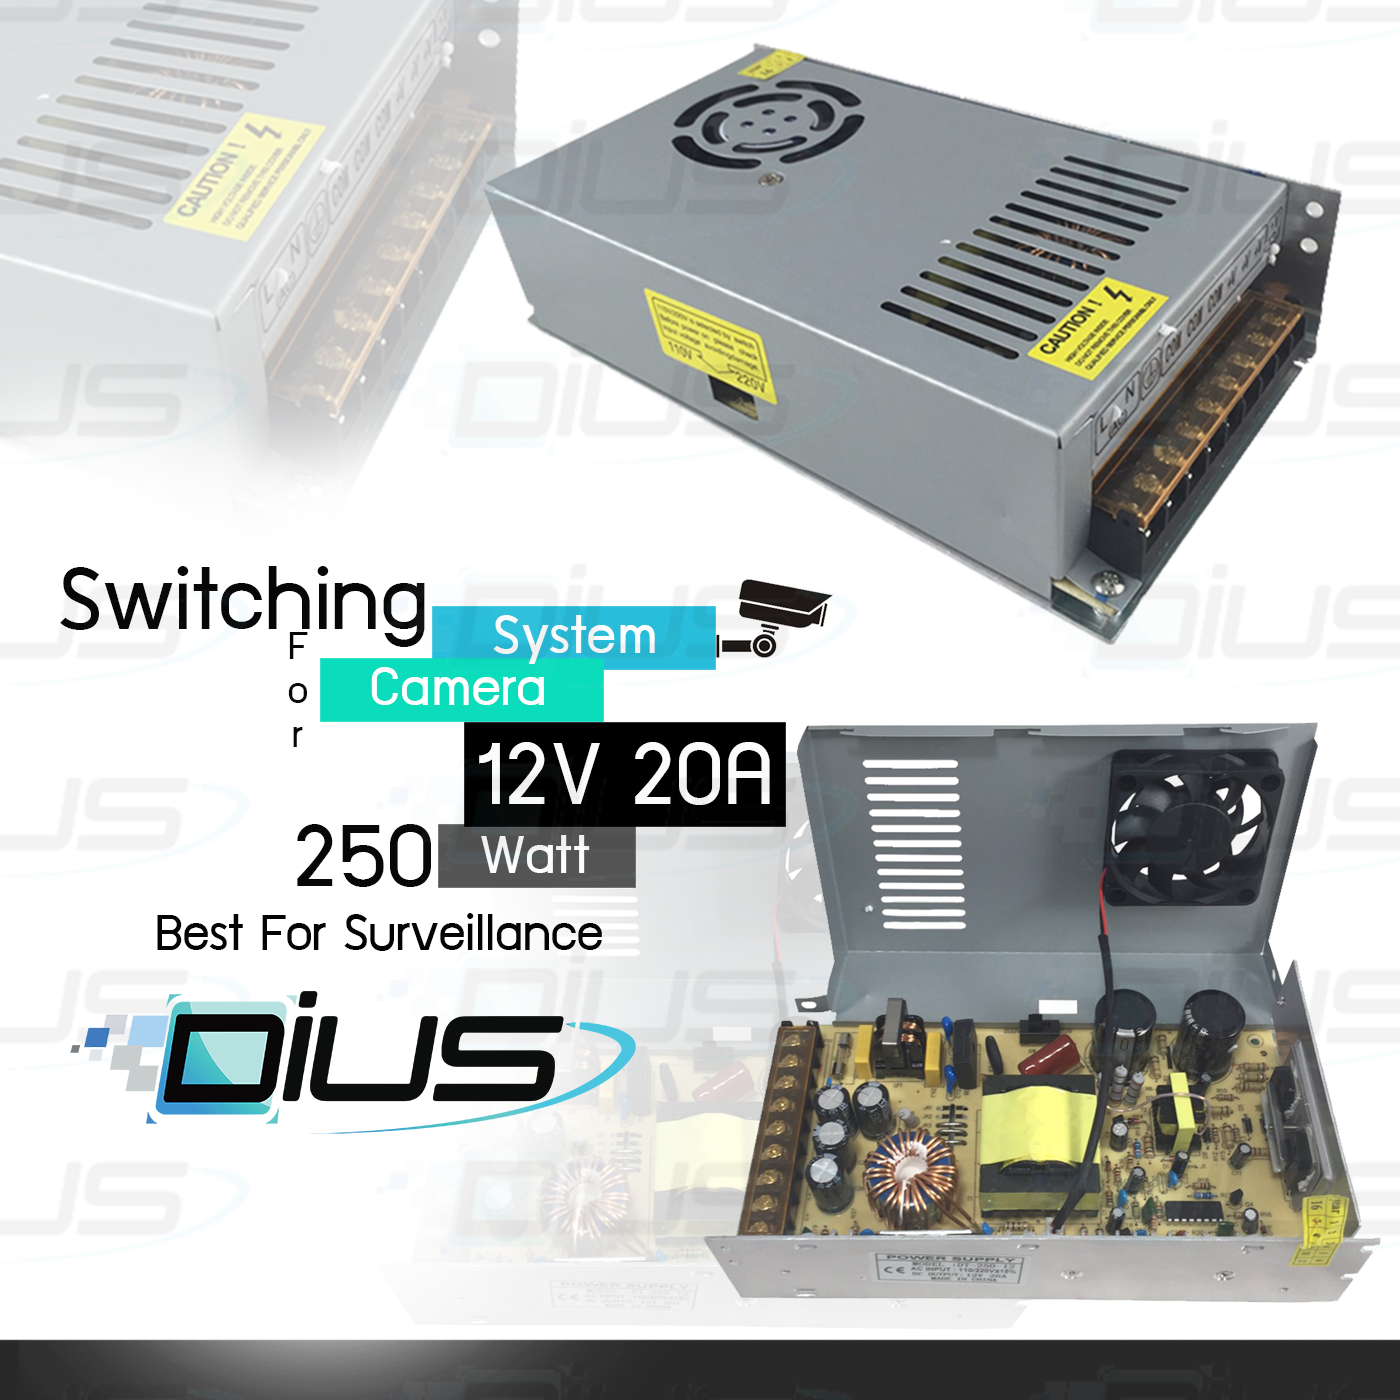 กล่องแปลงไฟ Switching Power Supply 12V 20A สำหรับระบบวงจรปิด / กล้องวงจรปิด / ไฟ LED